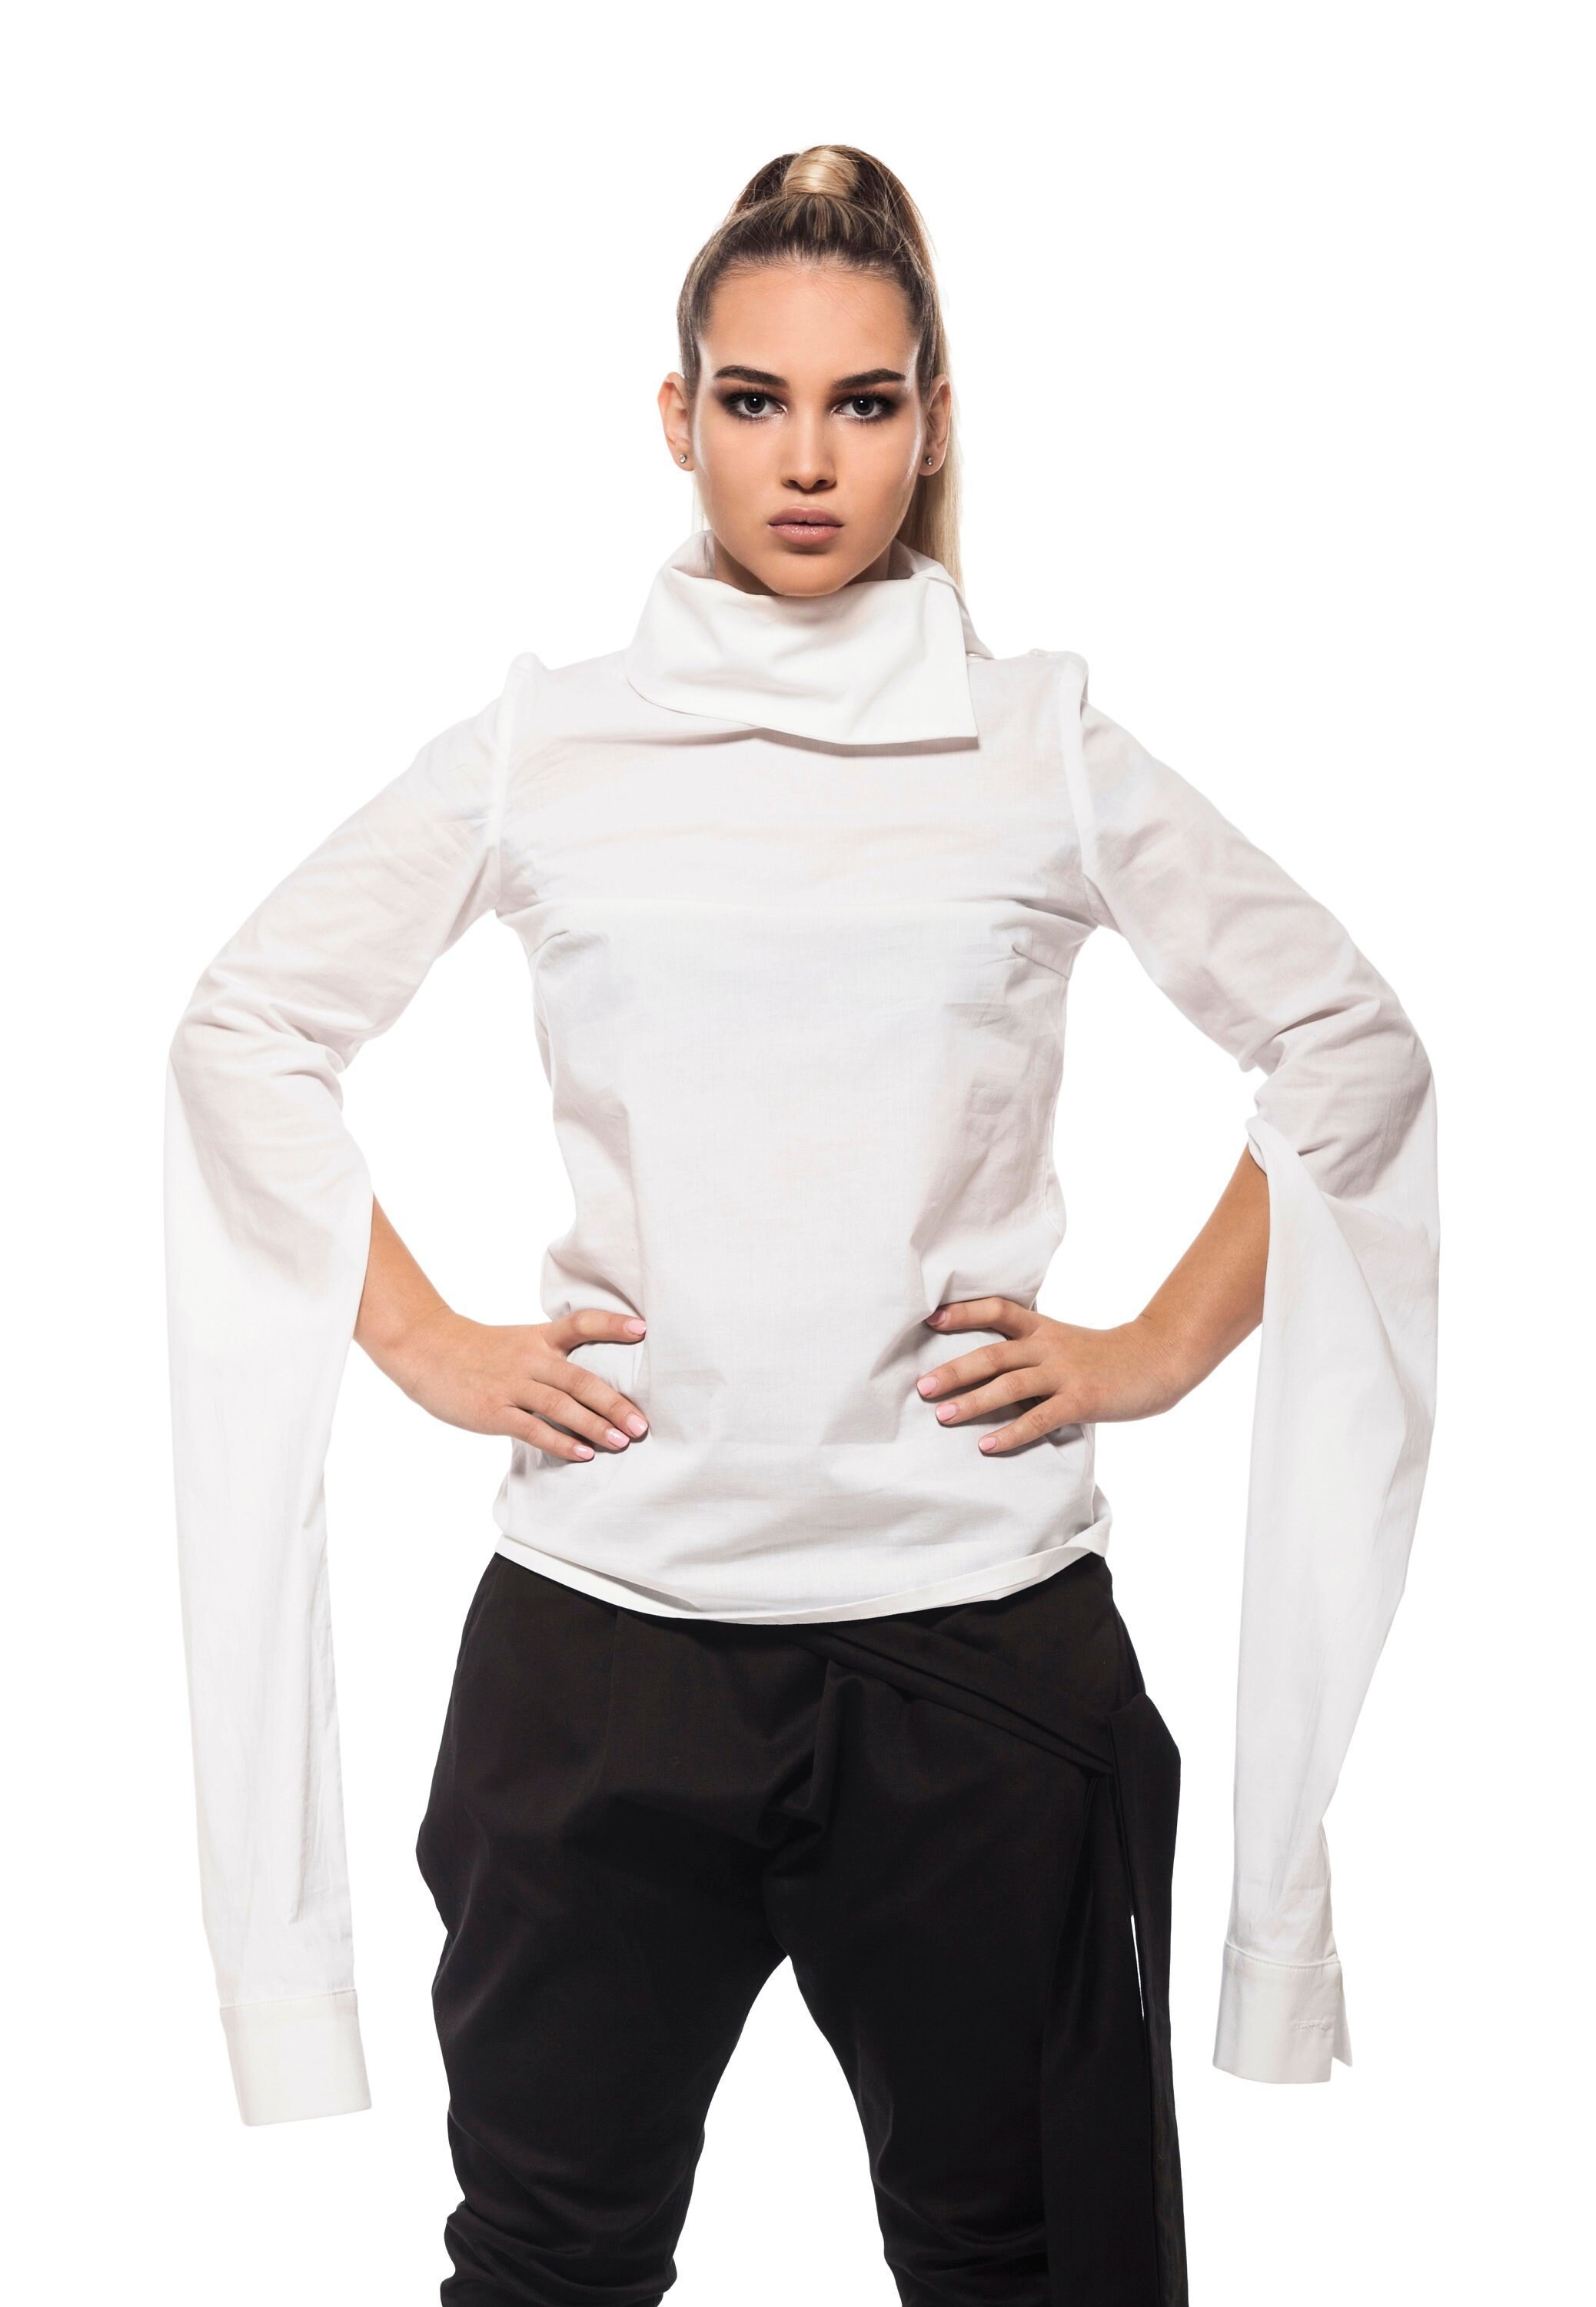 Long Sleeve Shirt Collar Blouse Asymmetrical Top Asymmetrical Top White Tunic Loose Blouse White Cotton Shirt Victorian Dress